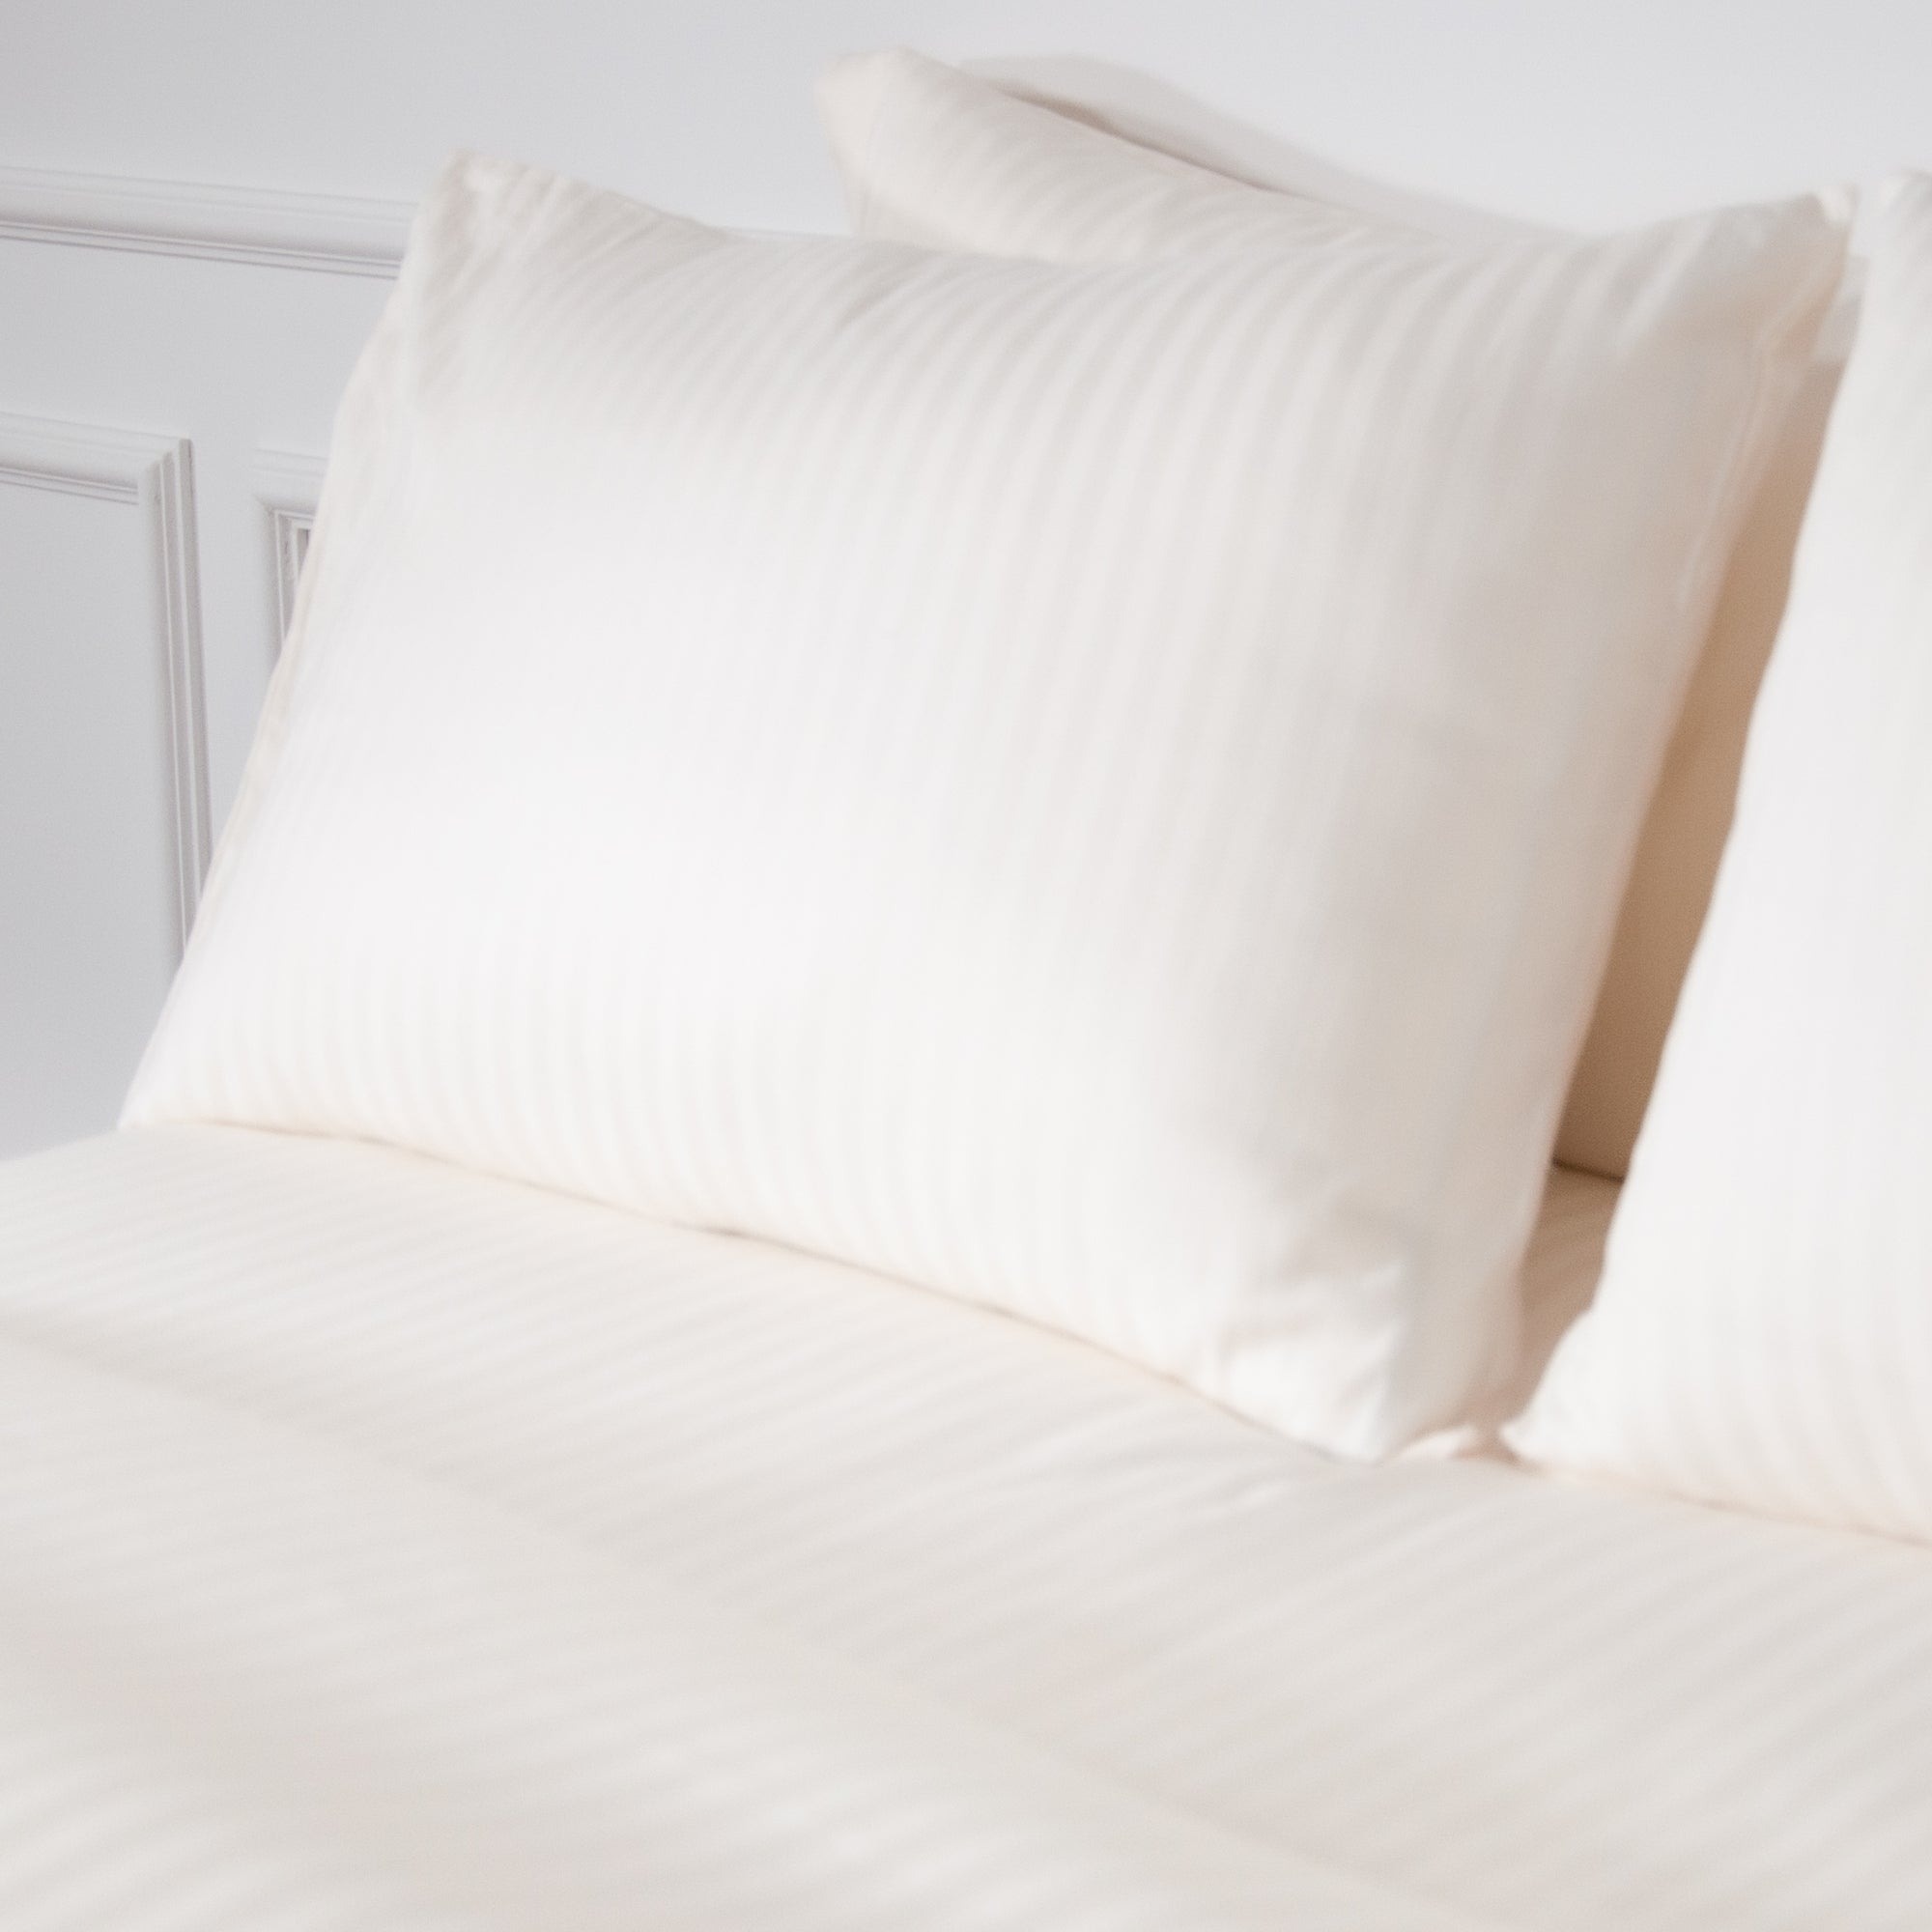 Einteiliges perlweiß gestreiftes Bettlaken aus 100 % Baumwollsatin